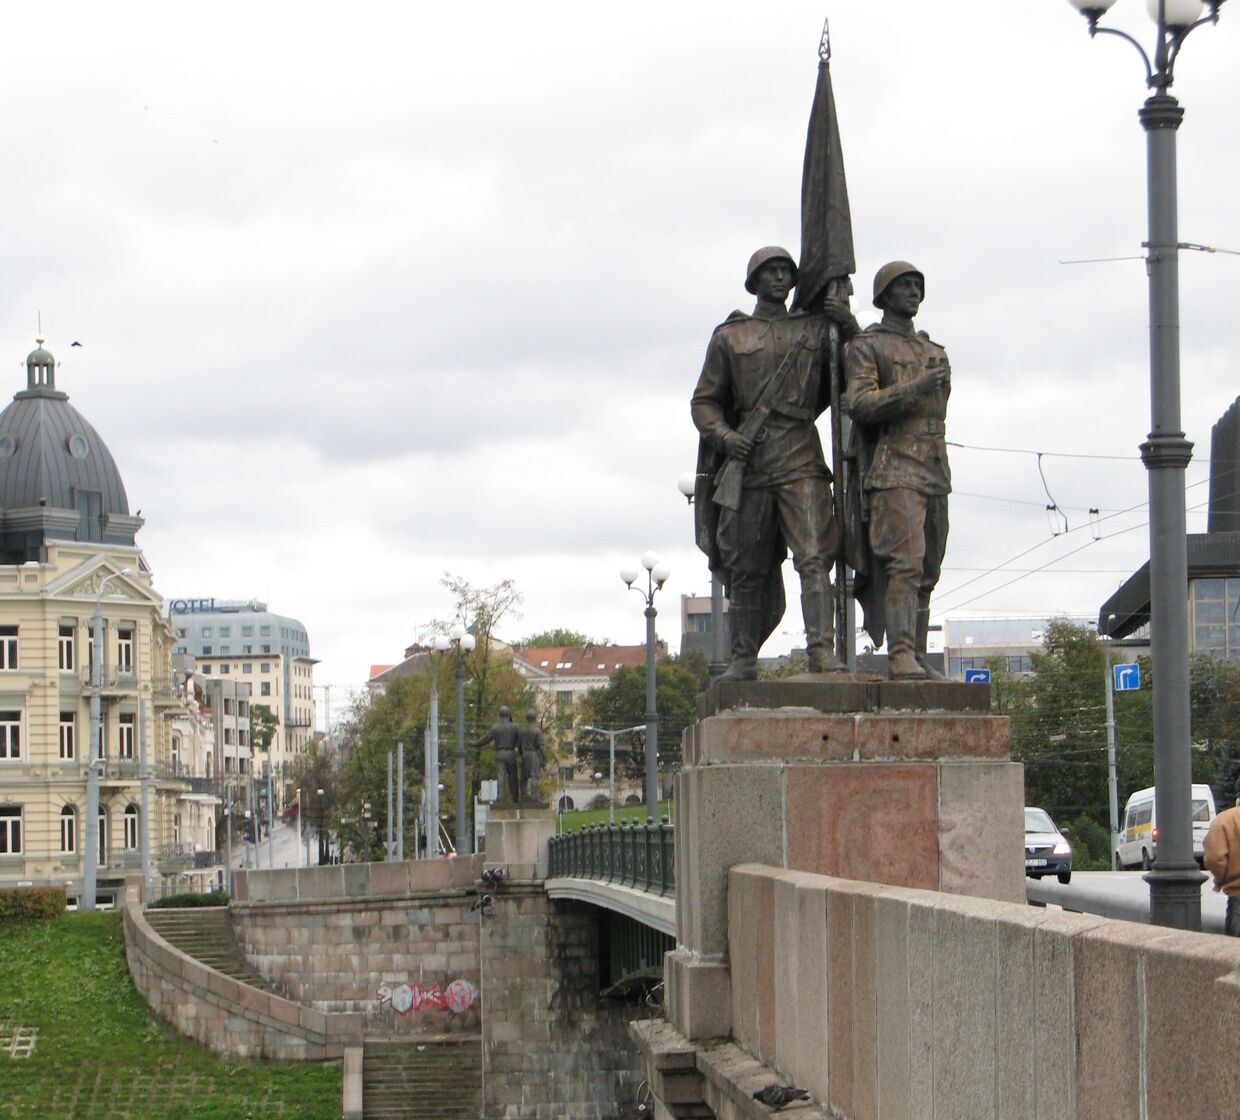 Зеленый мост в Вильнюсе